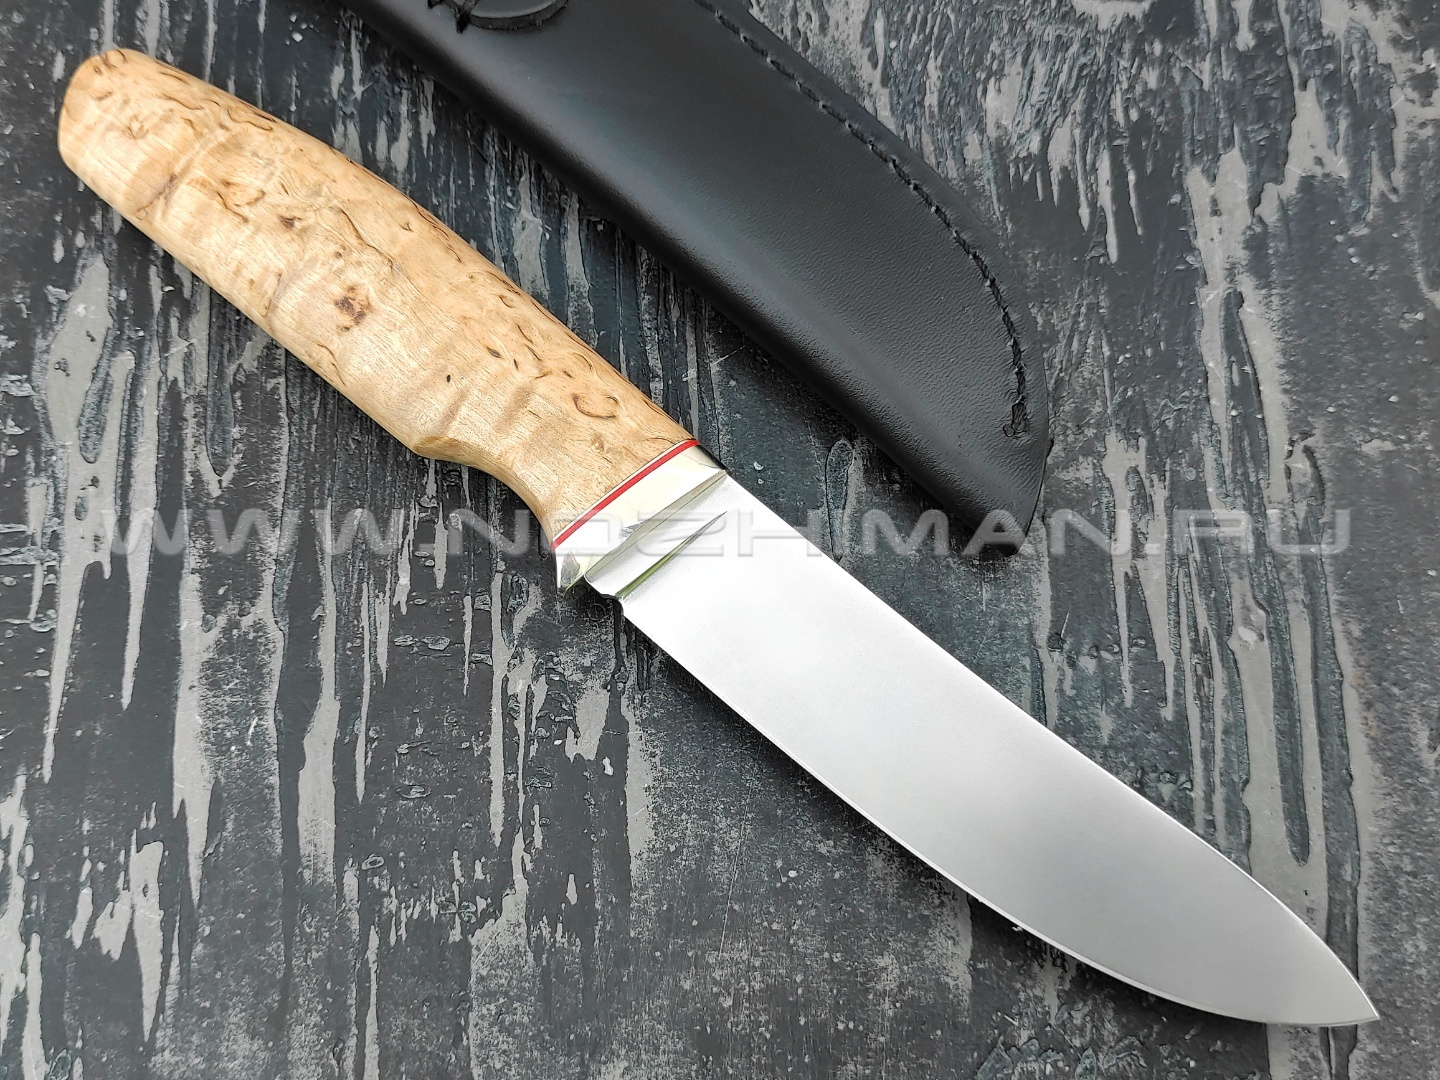 Кметь нож Скинер-2, сталь K340, рукоять карельская берёза